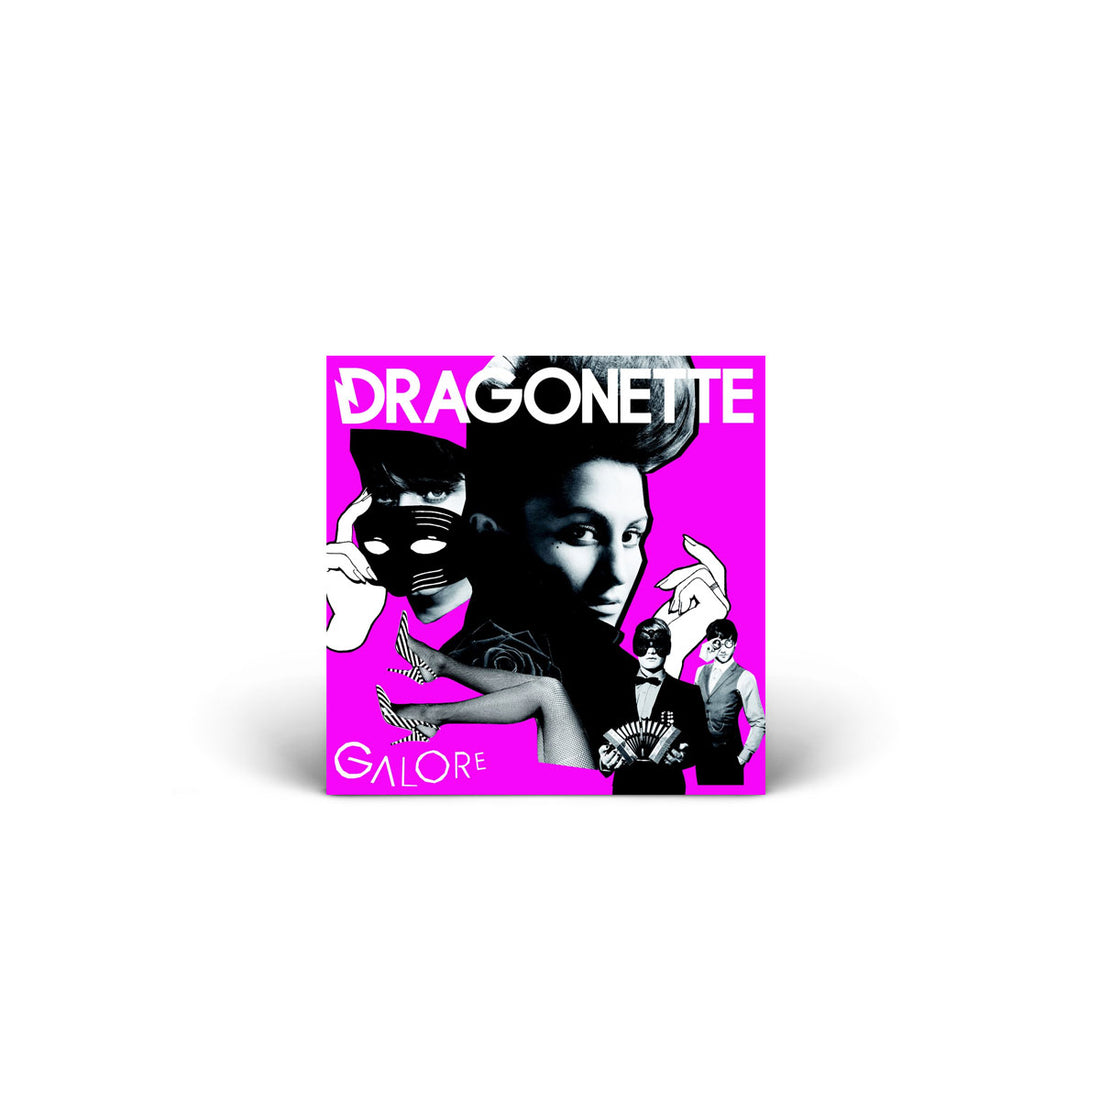 SIGNED! DRAGONETTE Music - Galore Cd